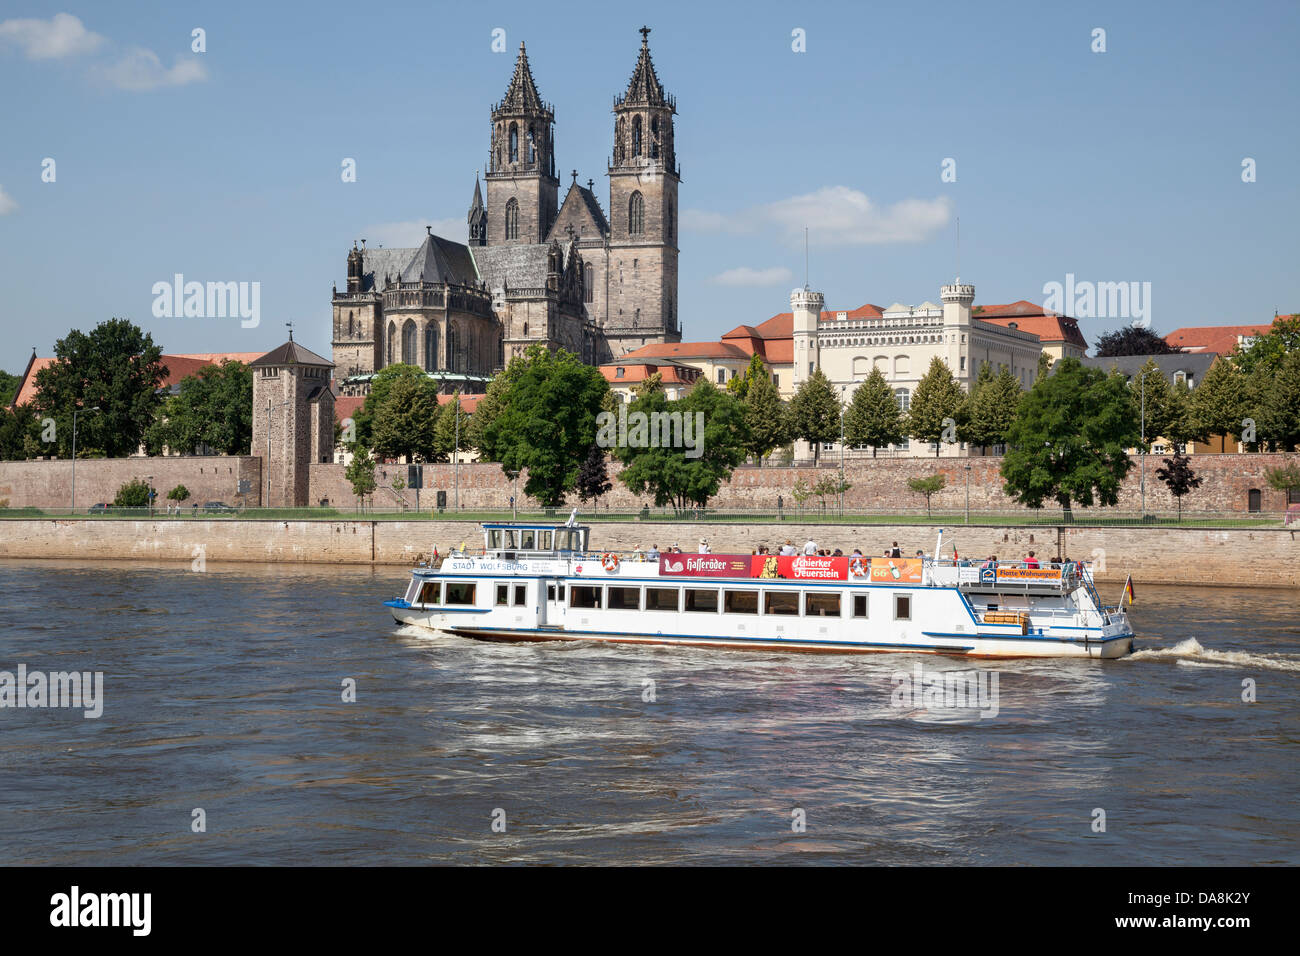 La barca turistica sul fiume Elba con la cattedrale e Fürstenwall, Magdeburgo, Sassonia Anhalt, Germania Foto Stock